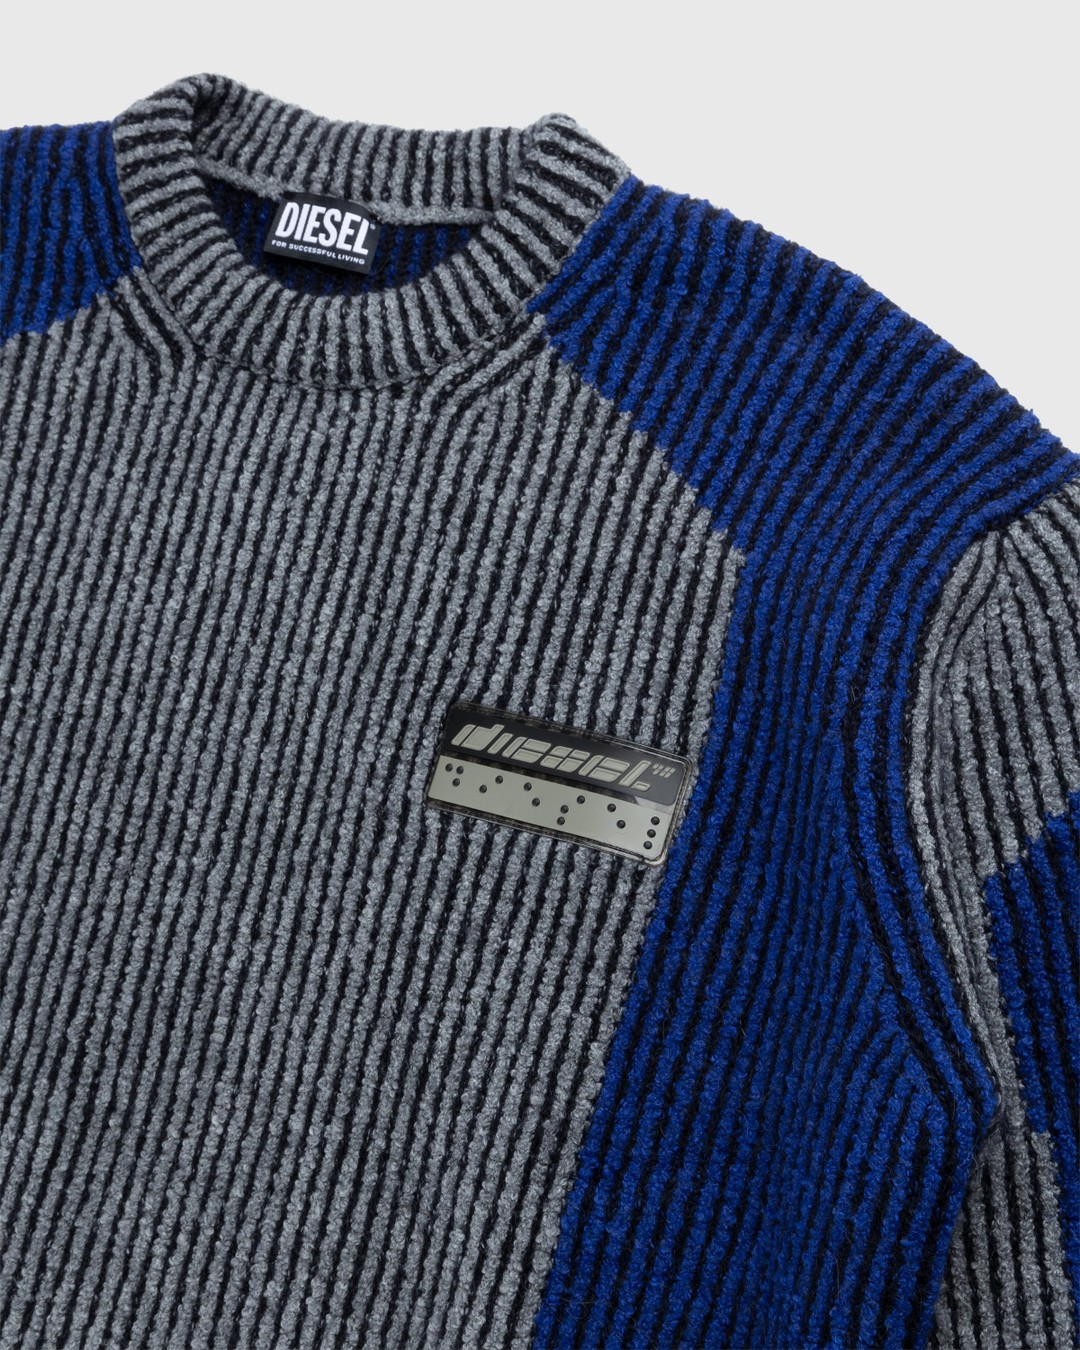 Diesel – Raig Sweater Blue - Knitwear - Blue - Image 3